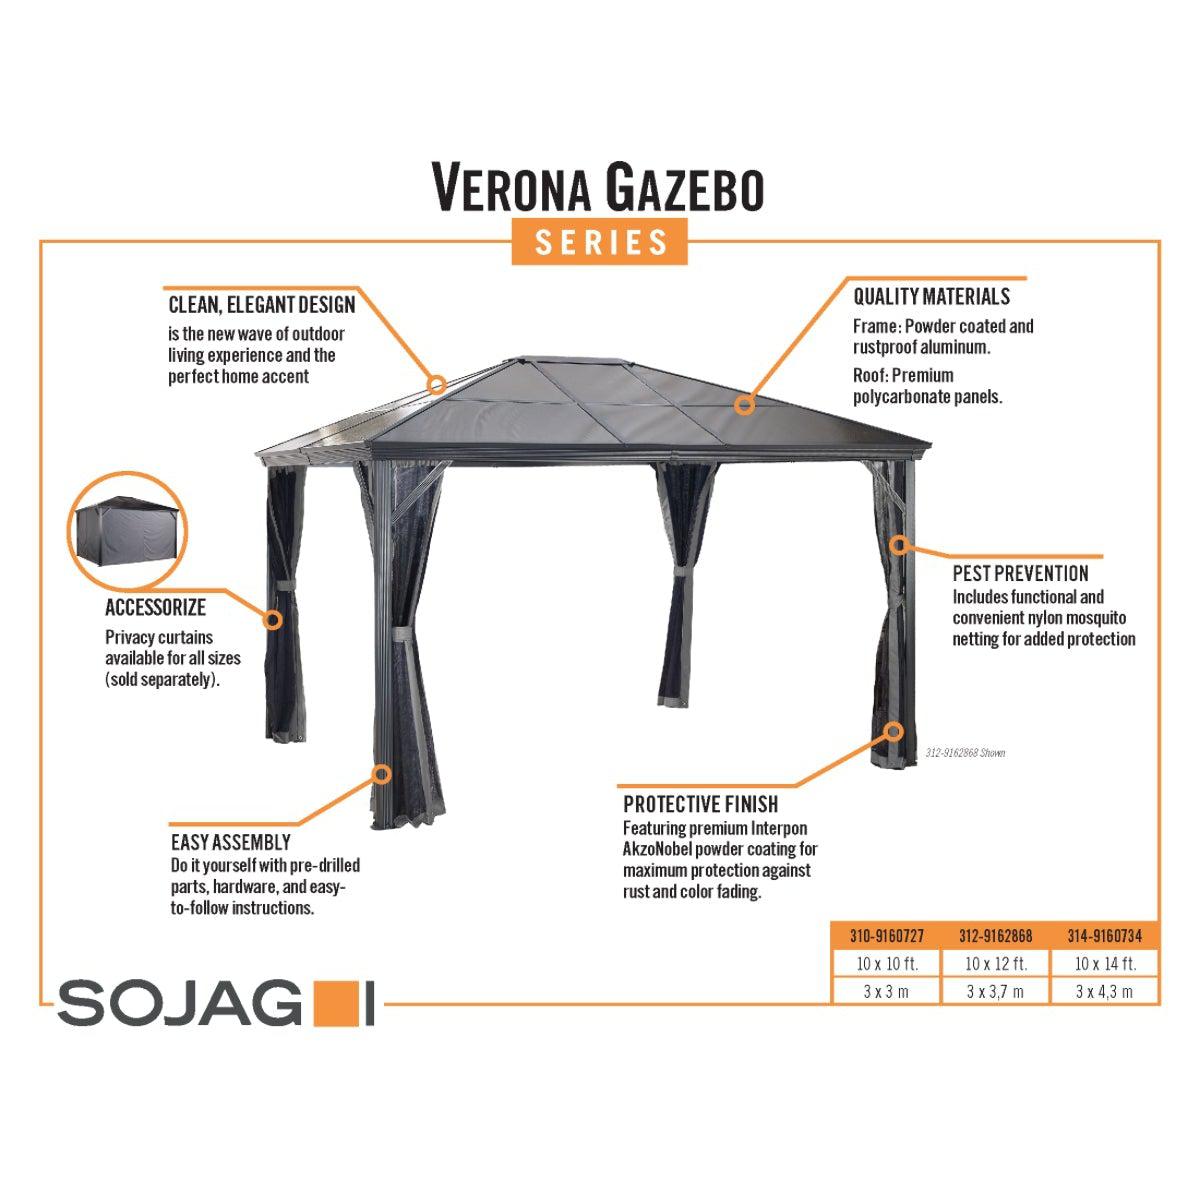 Verona Aluminum Gazebo 10 x 14 ft | Sojag-Delightful Yard